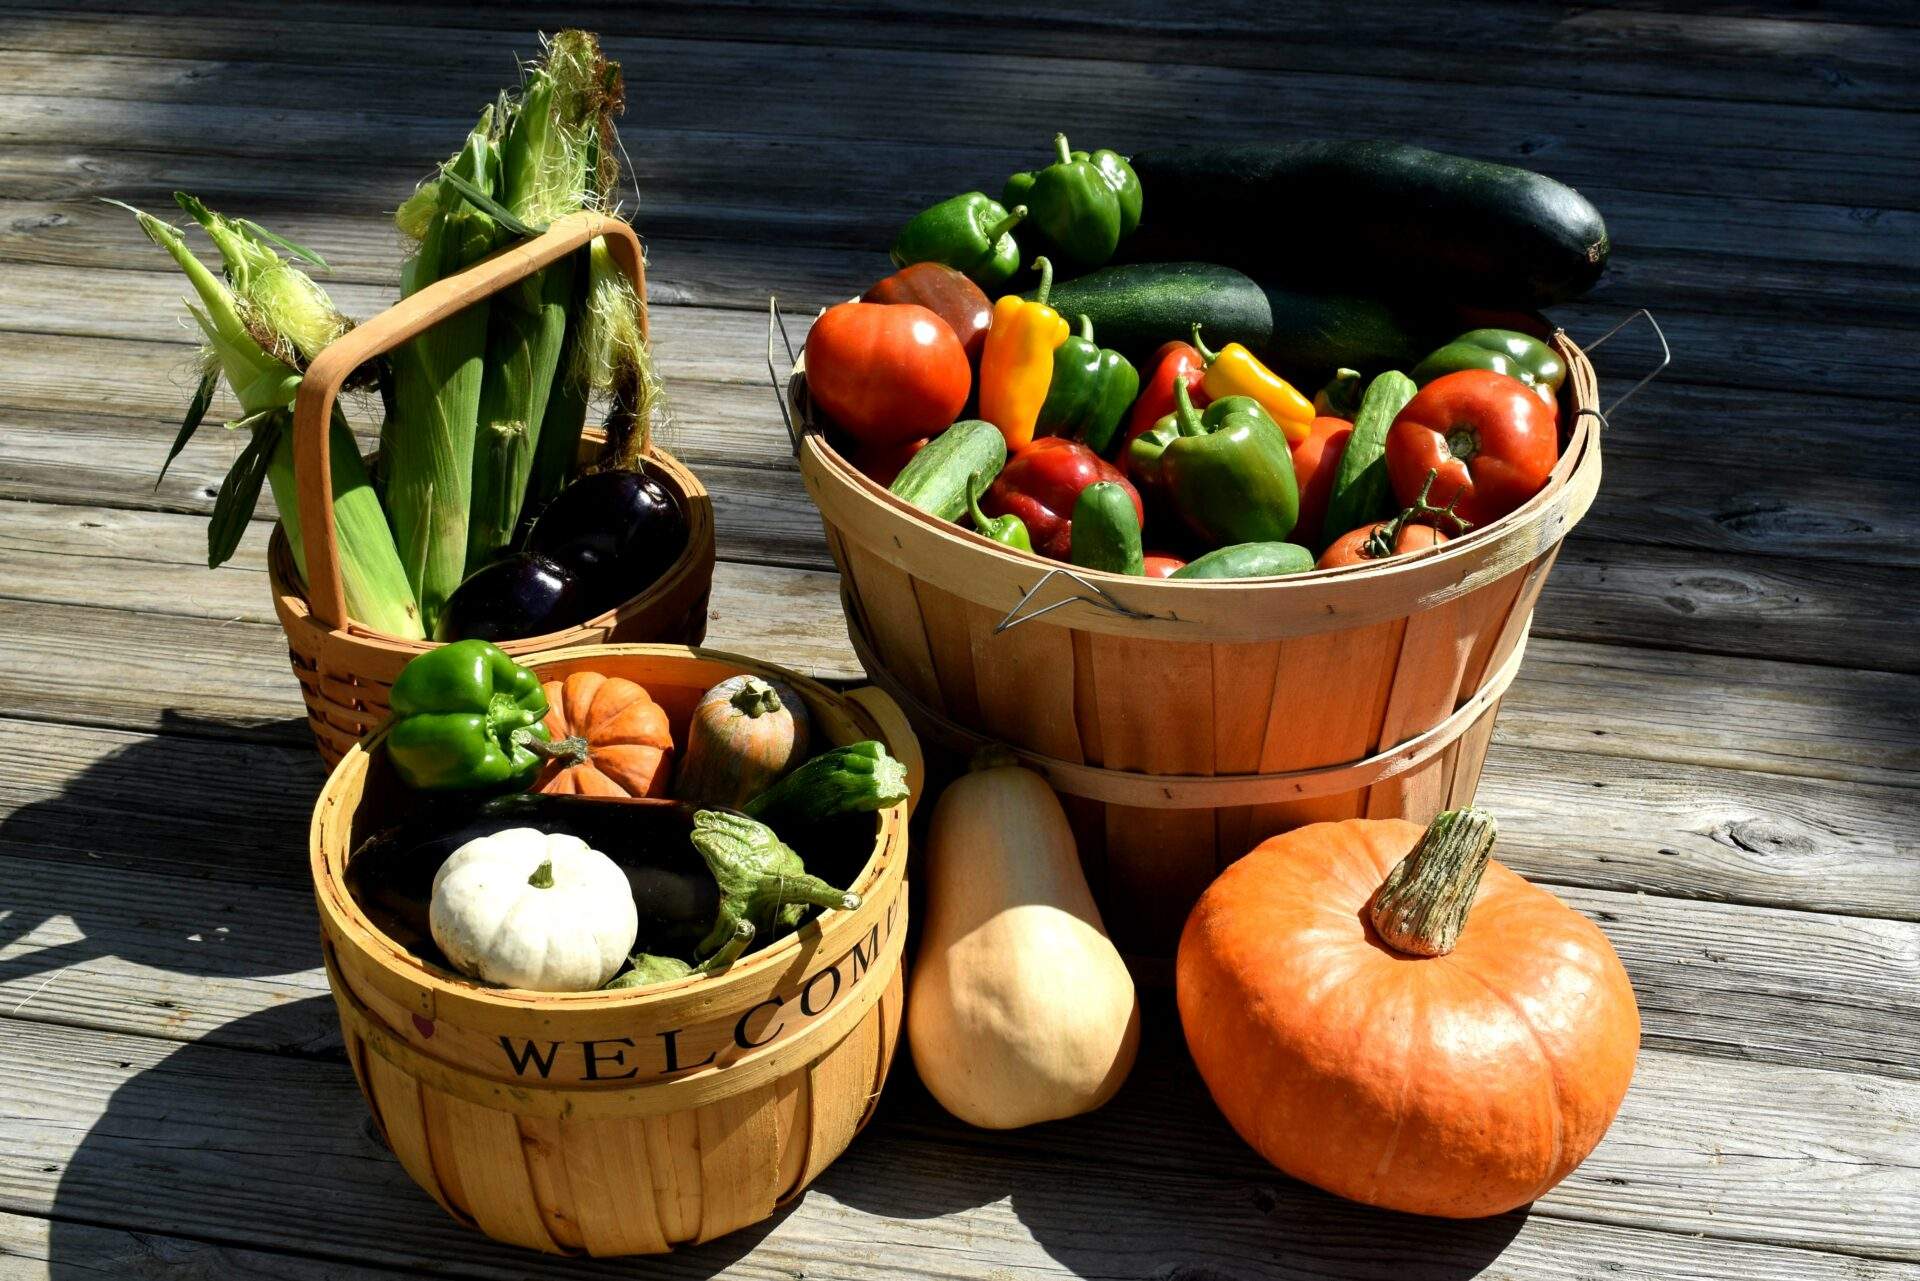 Gemüse draußen kühlen Energie sparen im Herbst 5 Tipps